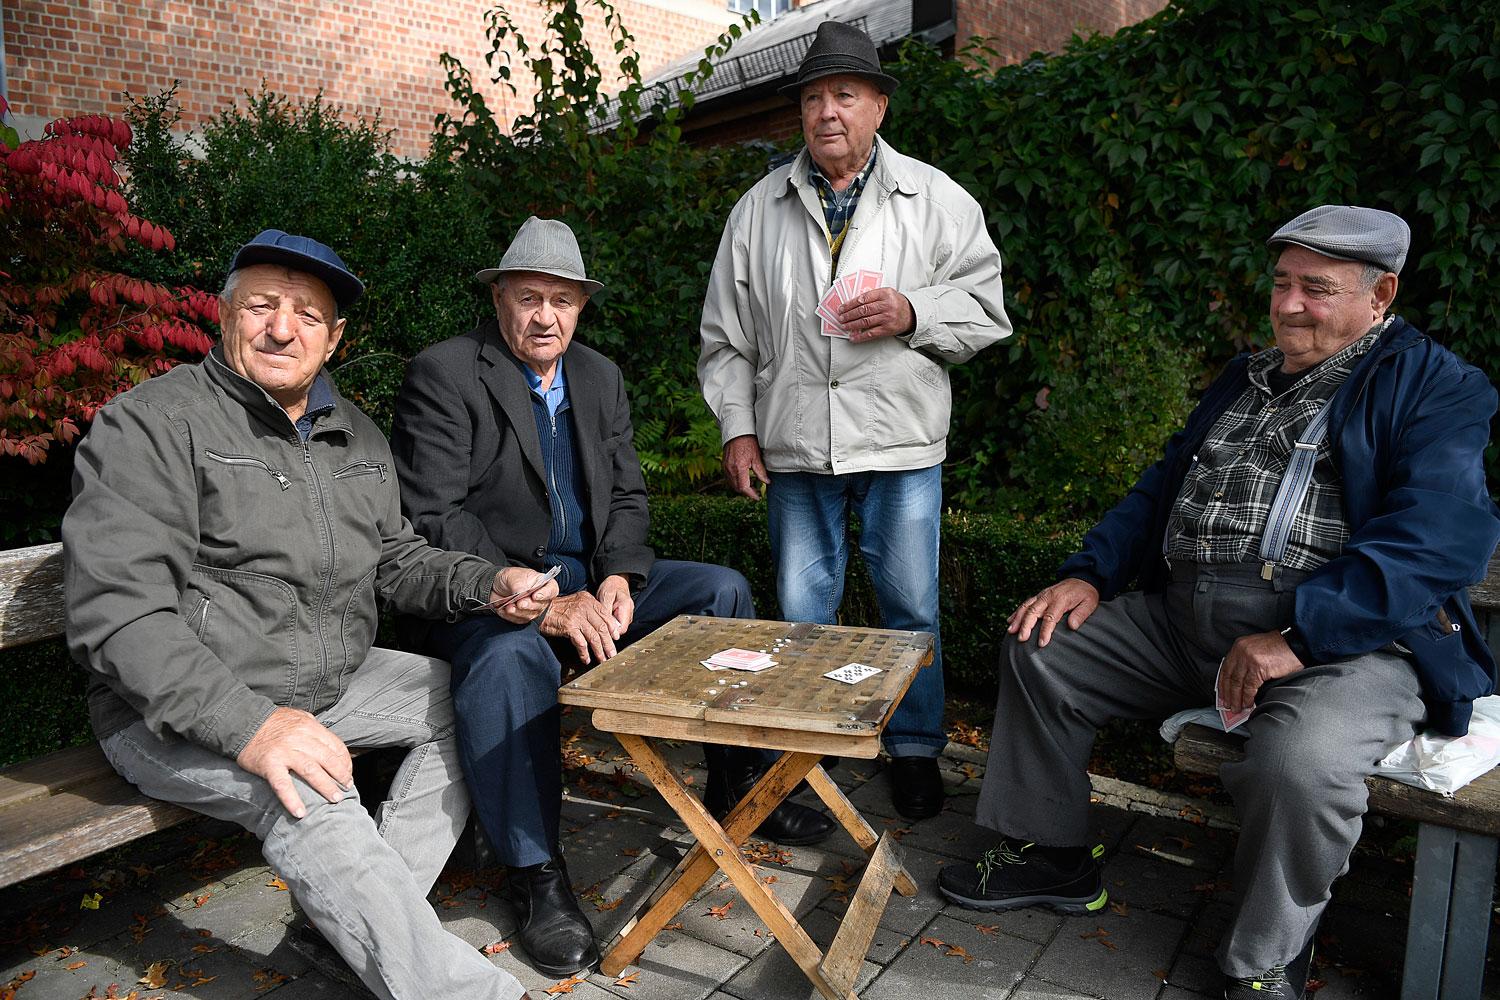 De äldre männen kom till Traunreut som flyktingar efter andra världskriget. Ändå ser de med ogillande på de nyanlända.